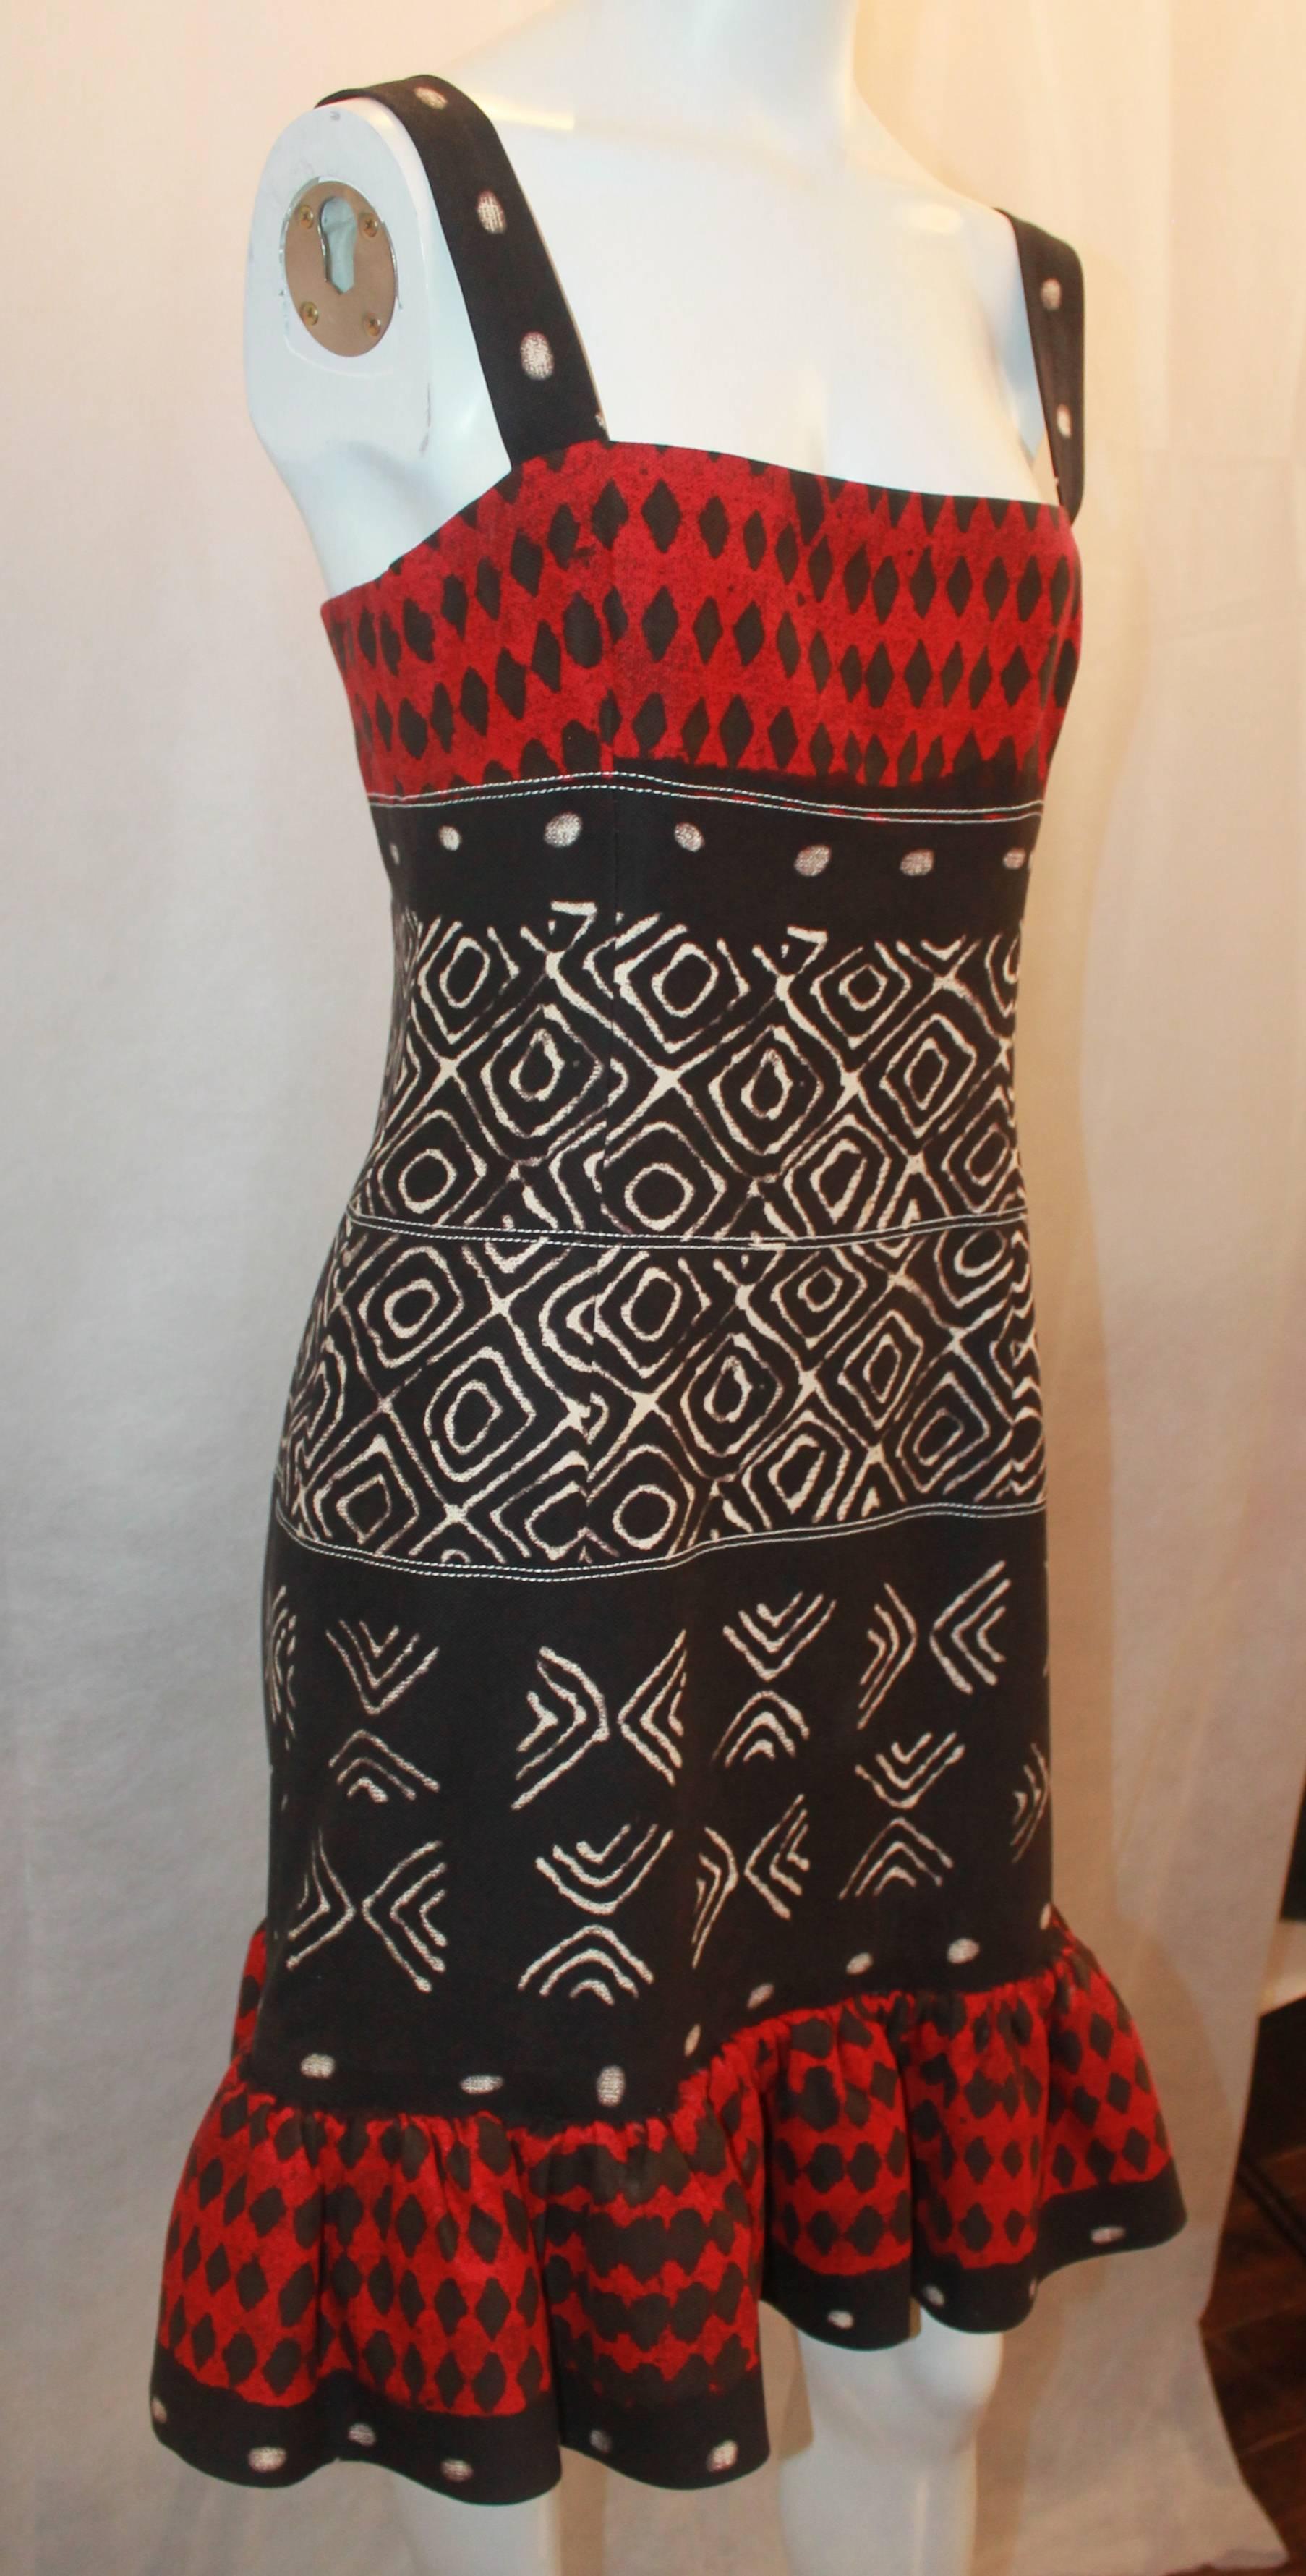 Oscar de la Renta Rotes, schwarzes und elfenbeinfarbenes ärmelloses Kleid mit Tribal-Print aus Baumwolle - 8.  Dieses bezaubernde Oscar-Kleid ist in ausgezeichnetem Zustand.  Es hat einen hübschen Druck aus roter, schwarzer und elfenbeinfarbener